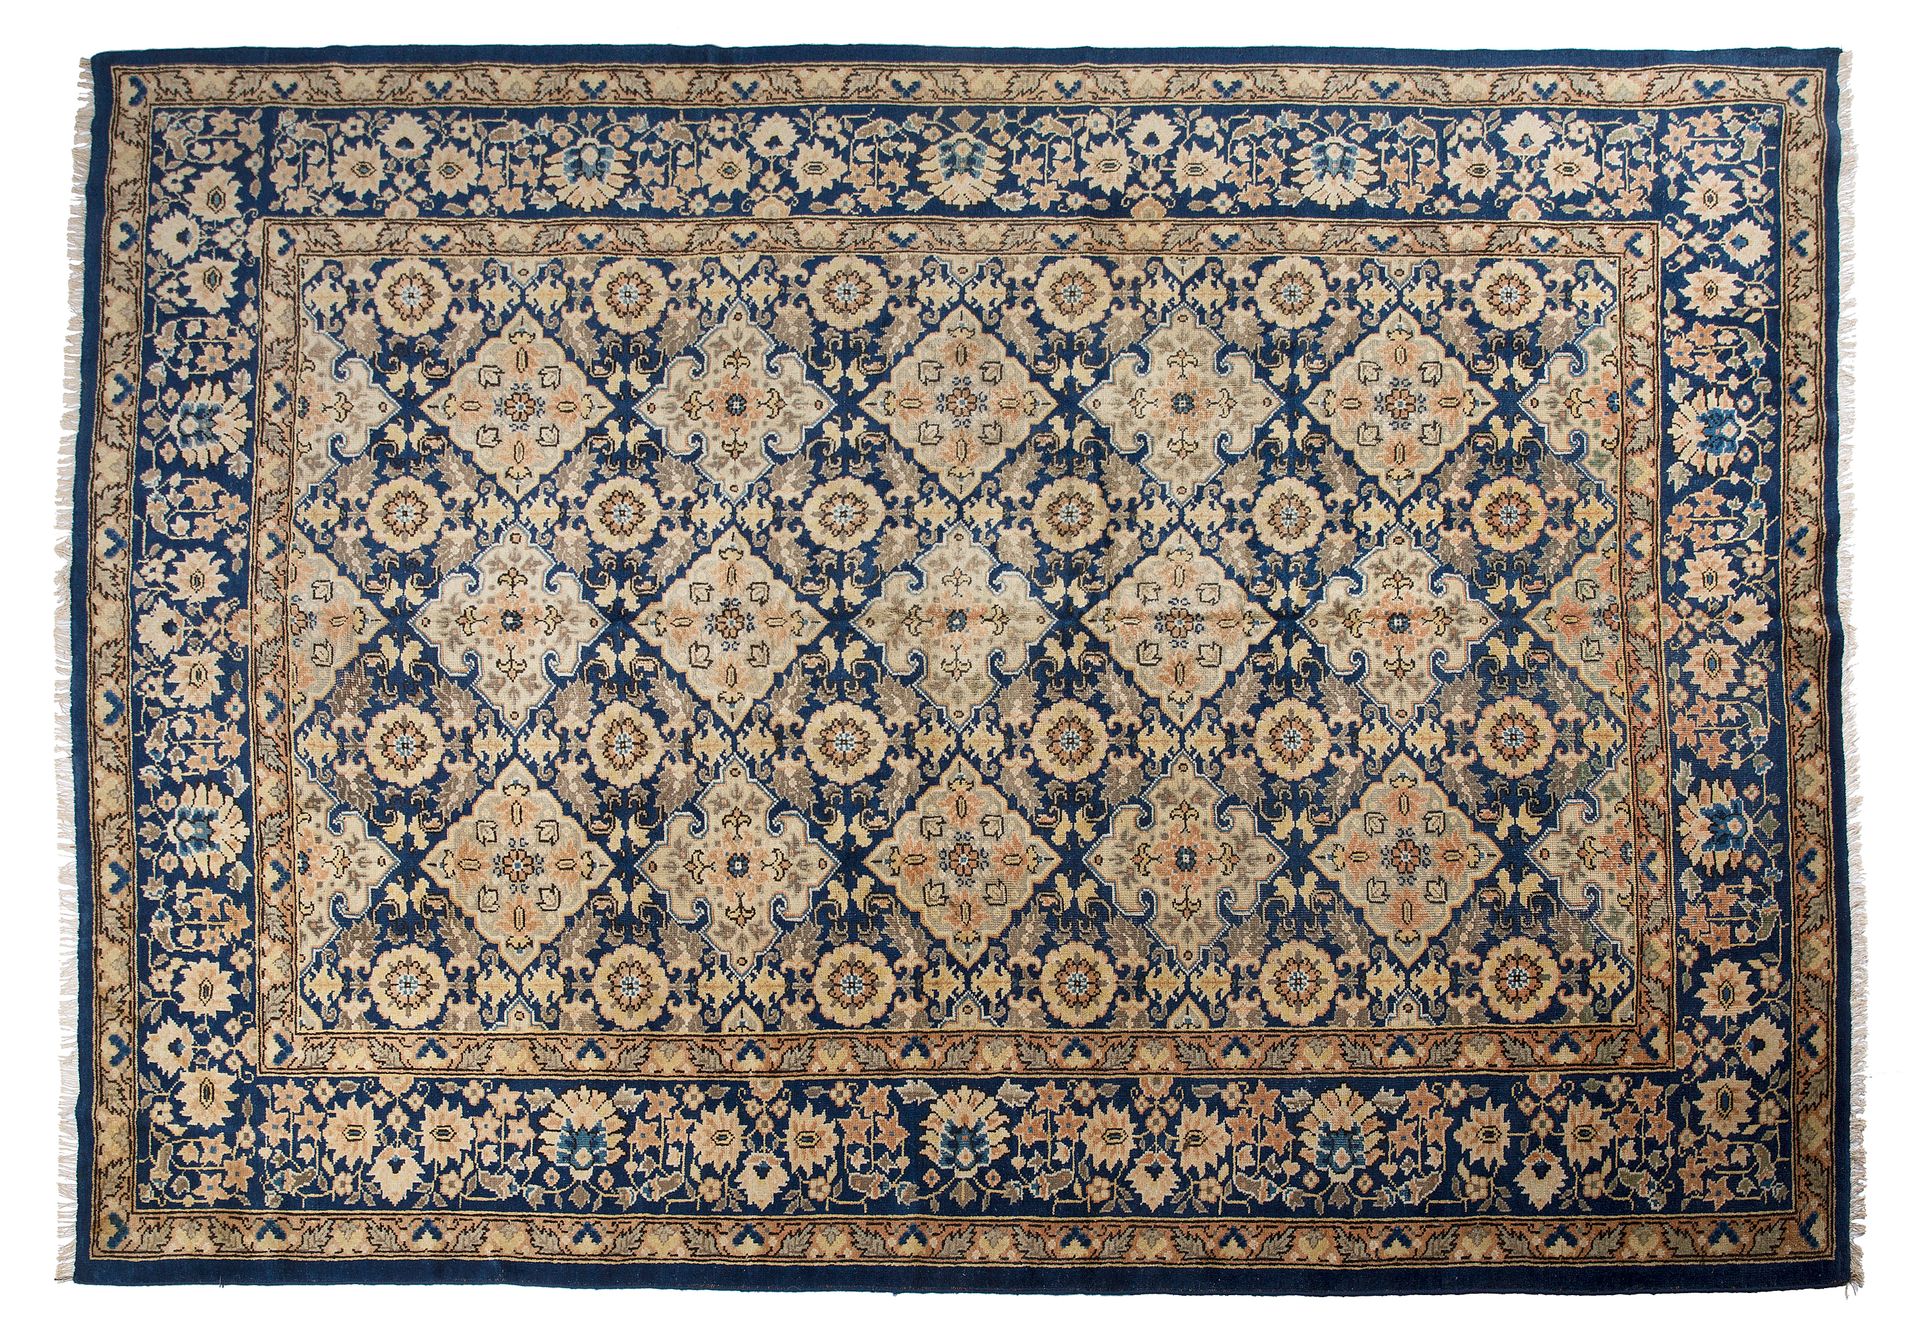 Null Tappeto YARKAND (Asia centrale), fine del 19° secolo

Dimensioni: 310 x 225&hellip;